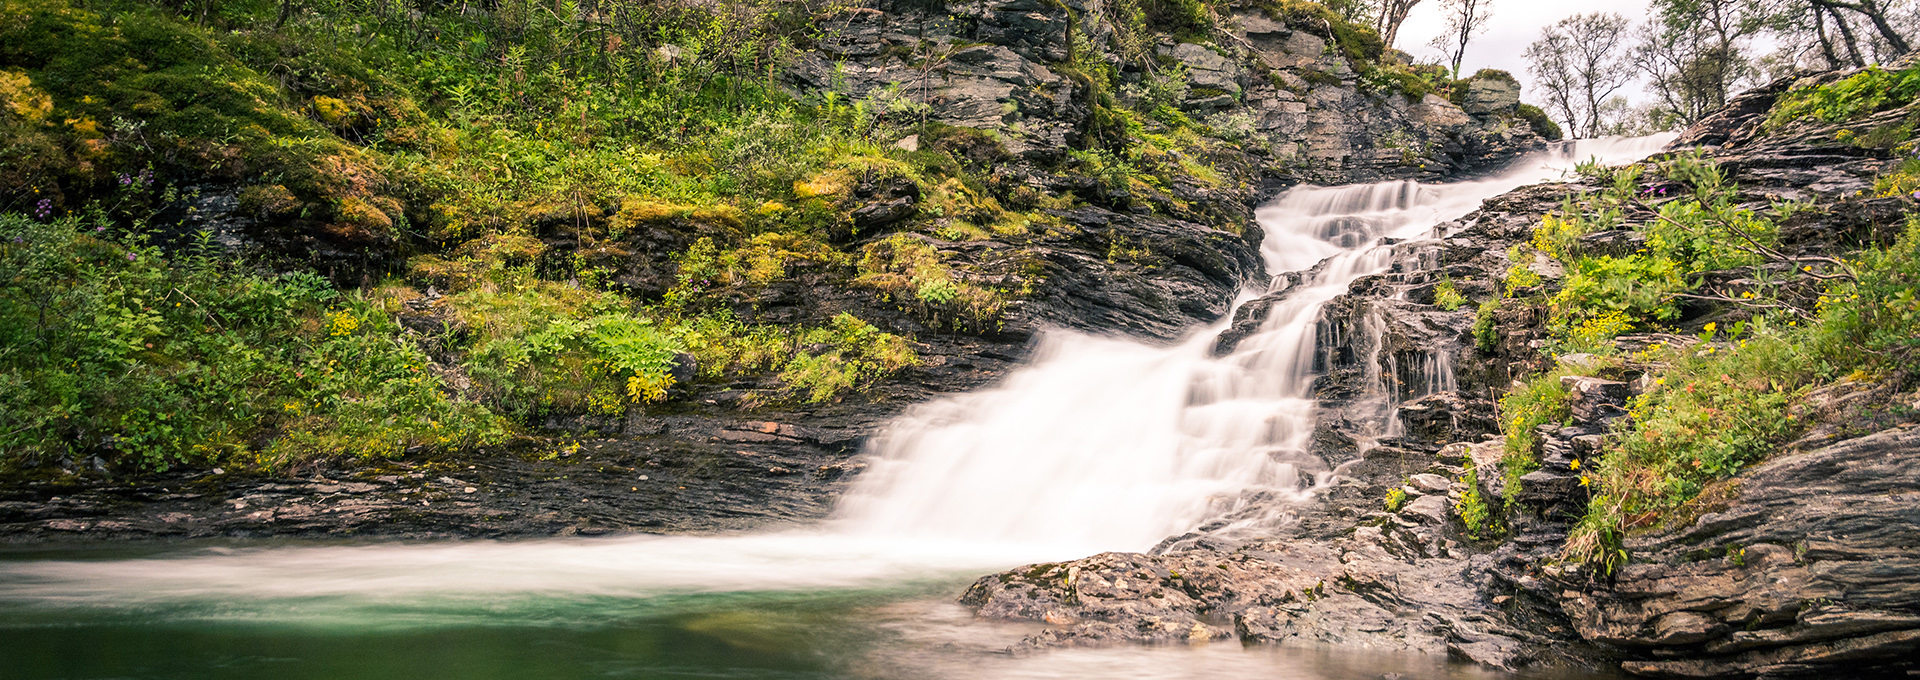 The beautiful waterfall Tväråfallet